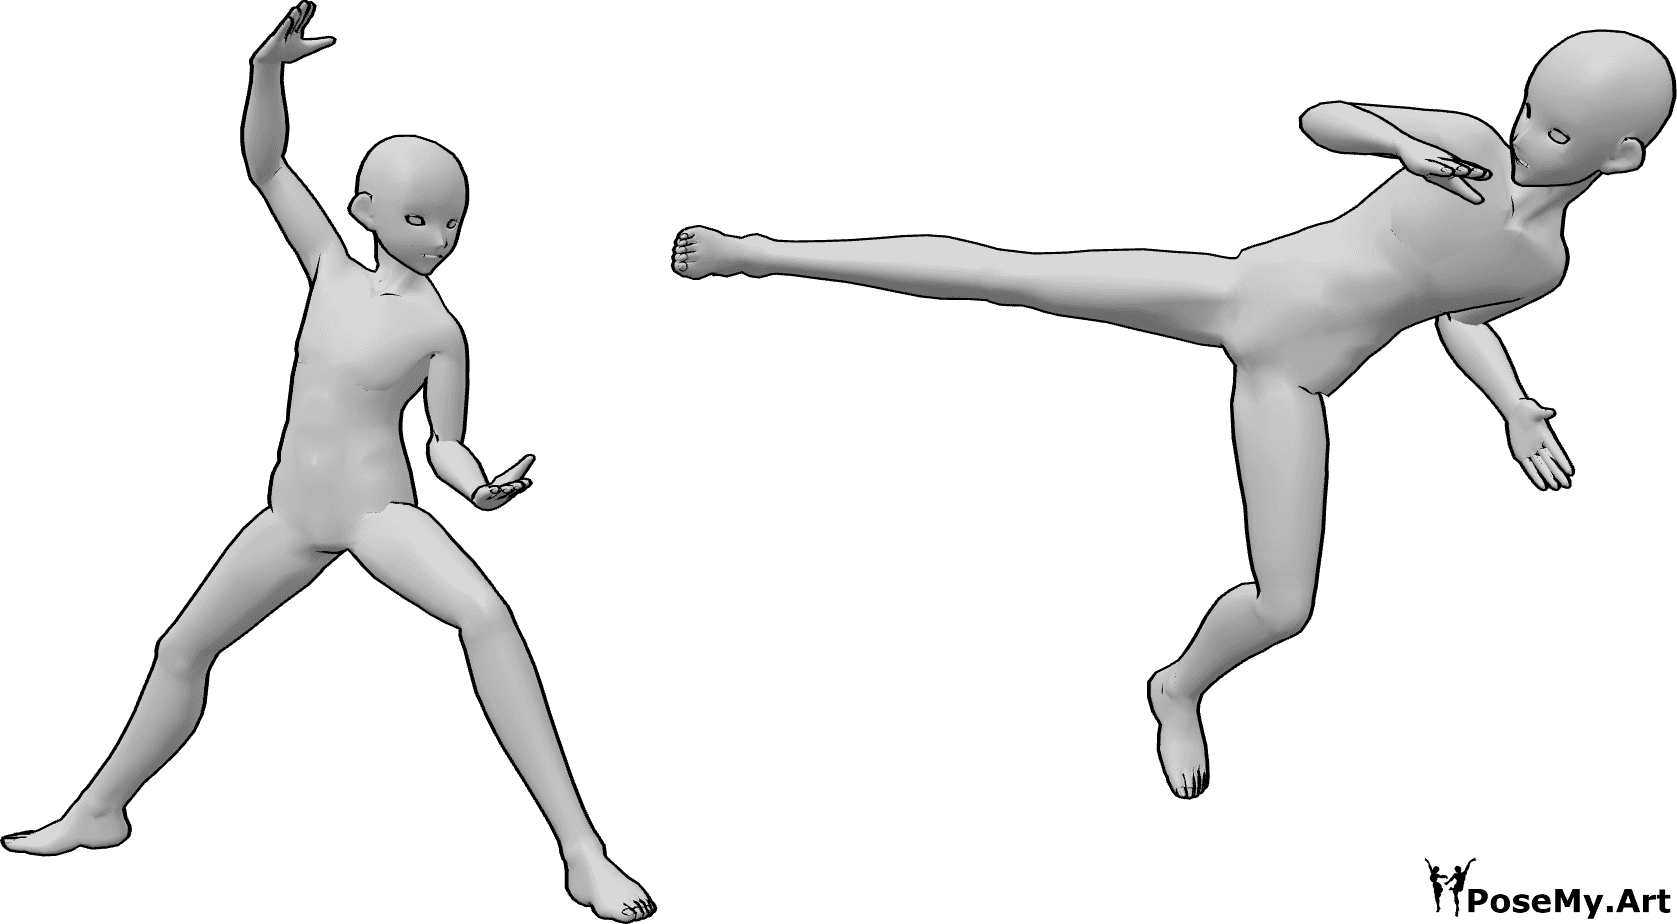 Posen-Referenz- Anime Ninja Kampf Pose - Zwei Anime-Männer kämpfen, einer von ihnen macht eine Sidekick-, Anime-Ninja-Kampf-Pose